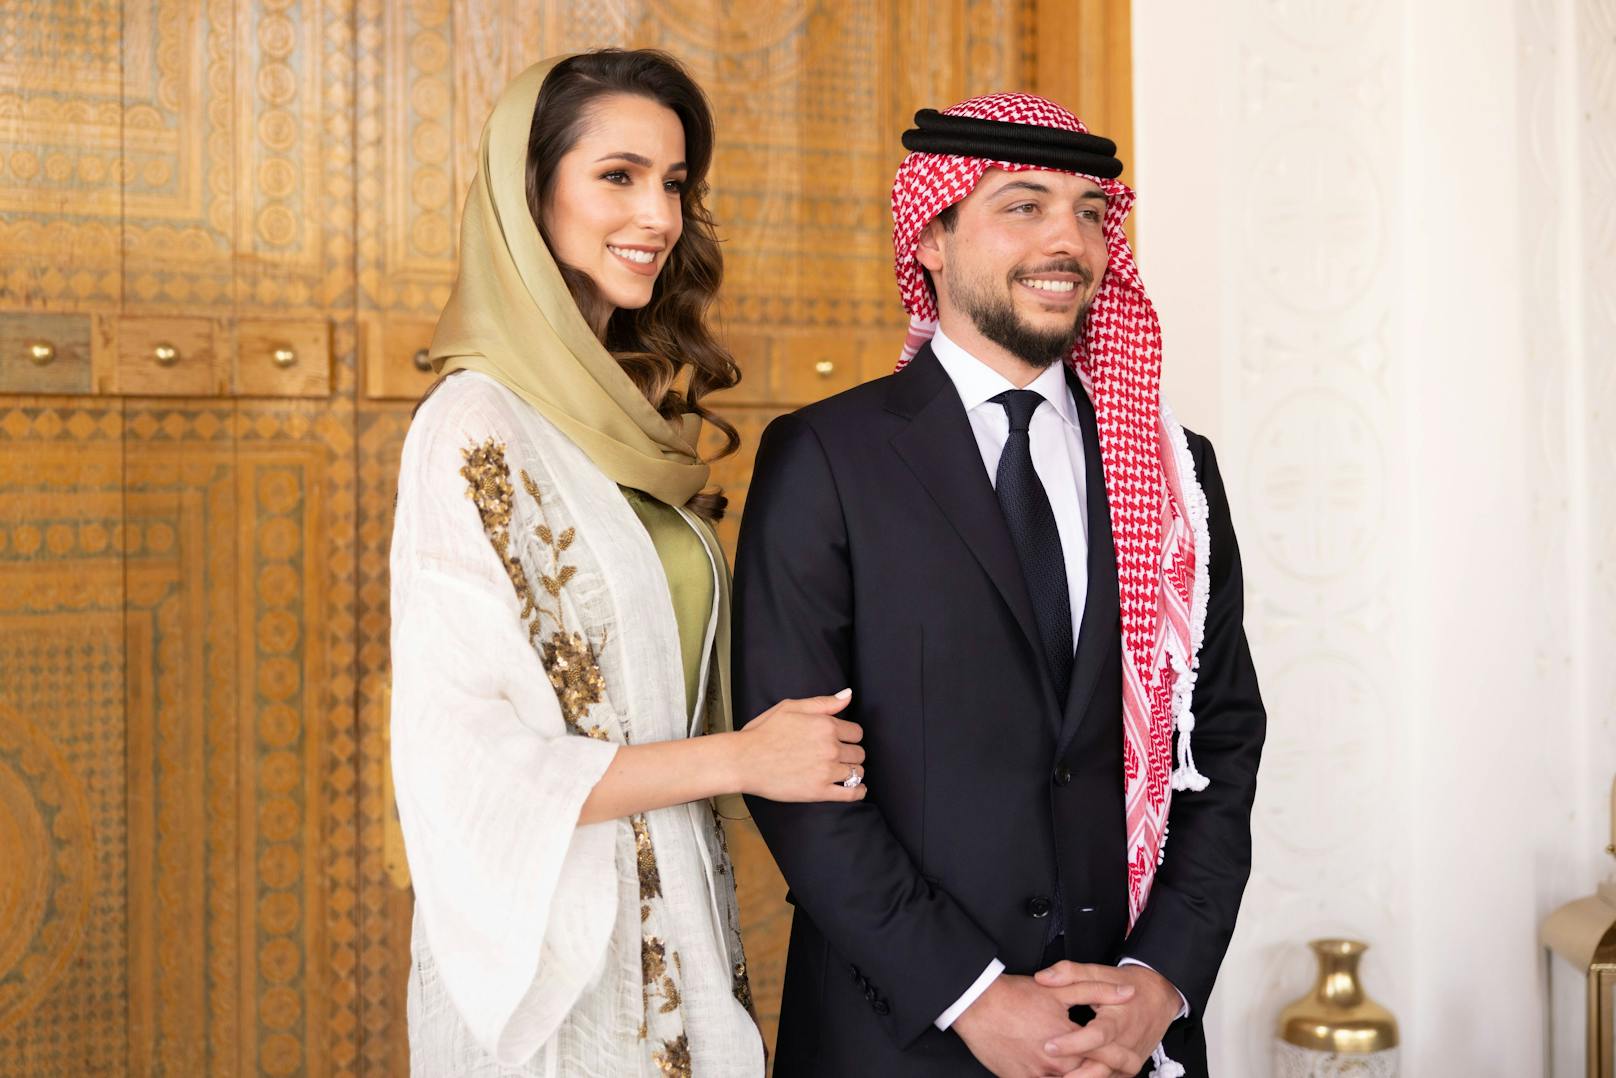 Der jordanische Kronprinz Hussein bin Abdullah (28) hat sich im August dieses Jahres mit Rajwa Al Saif verlobt.